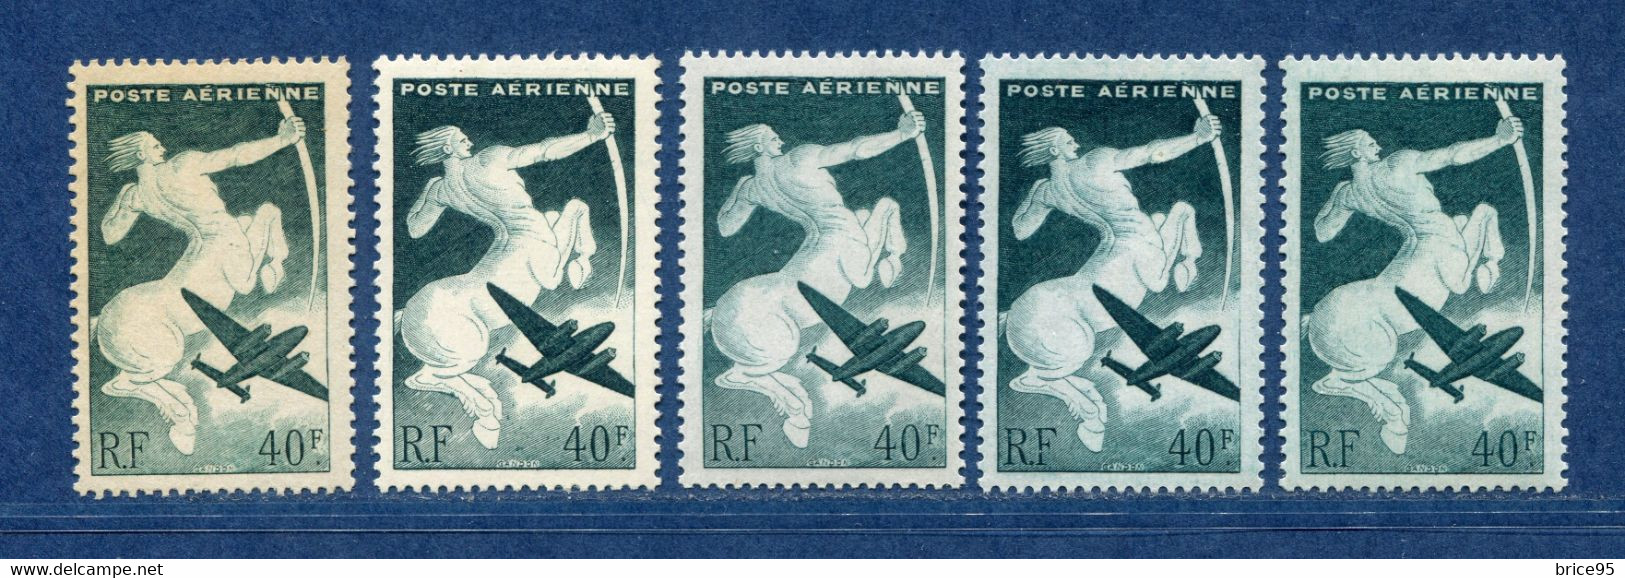 ⭐ France - Variété - YT PA N° 16 - Poste Aérienne - Couleurs - Pétouilles - Neuf Sans Charnière - 1946 ⭐ - Neufs